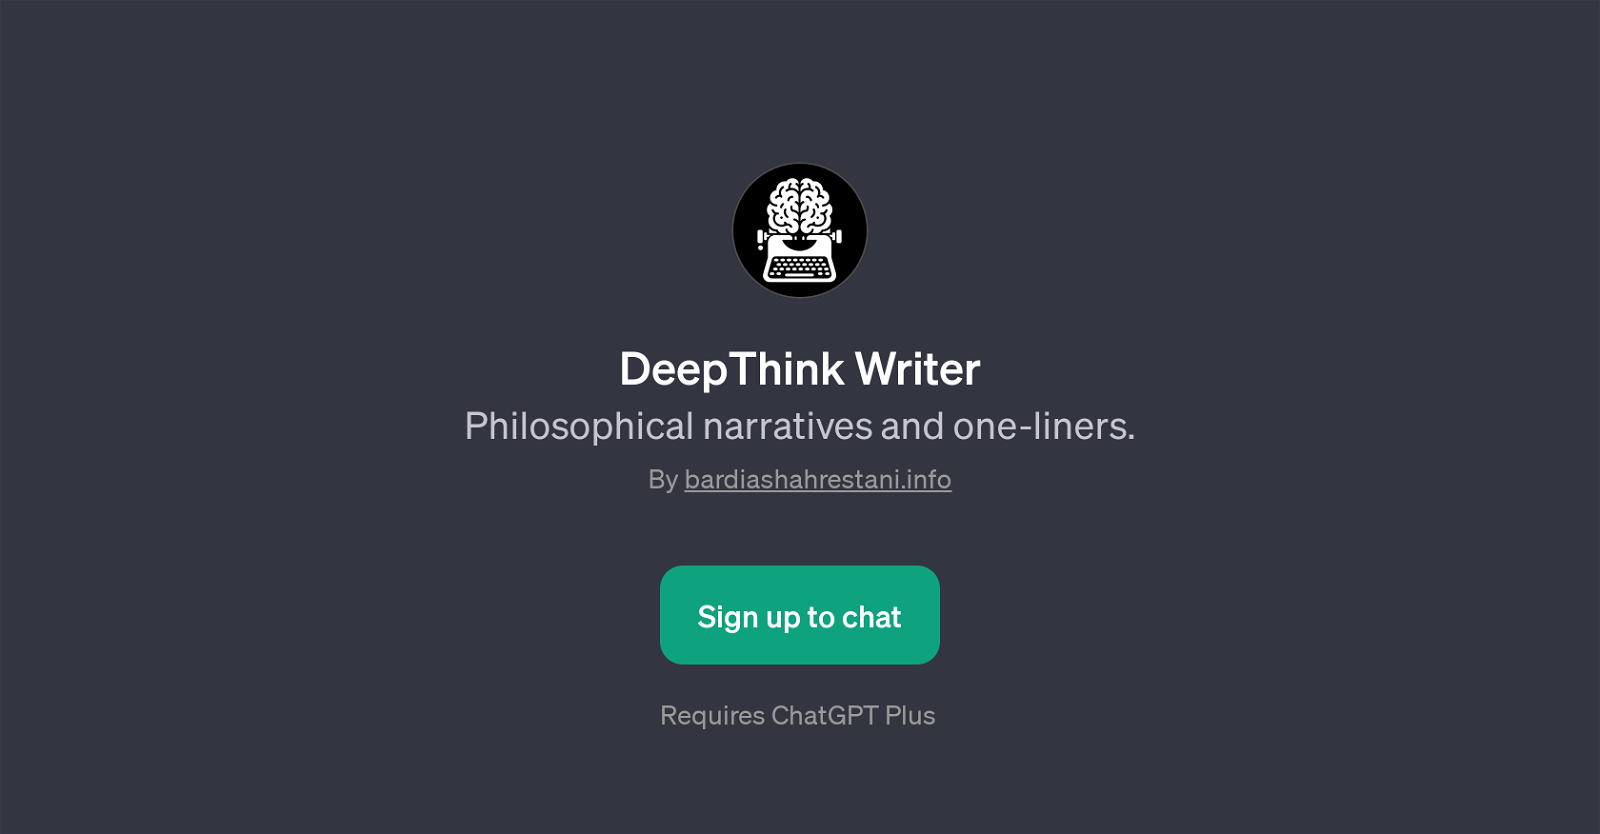 DeepThink Writer website